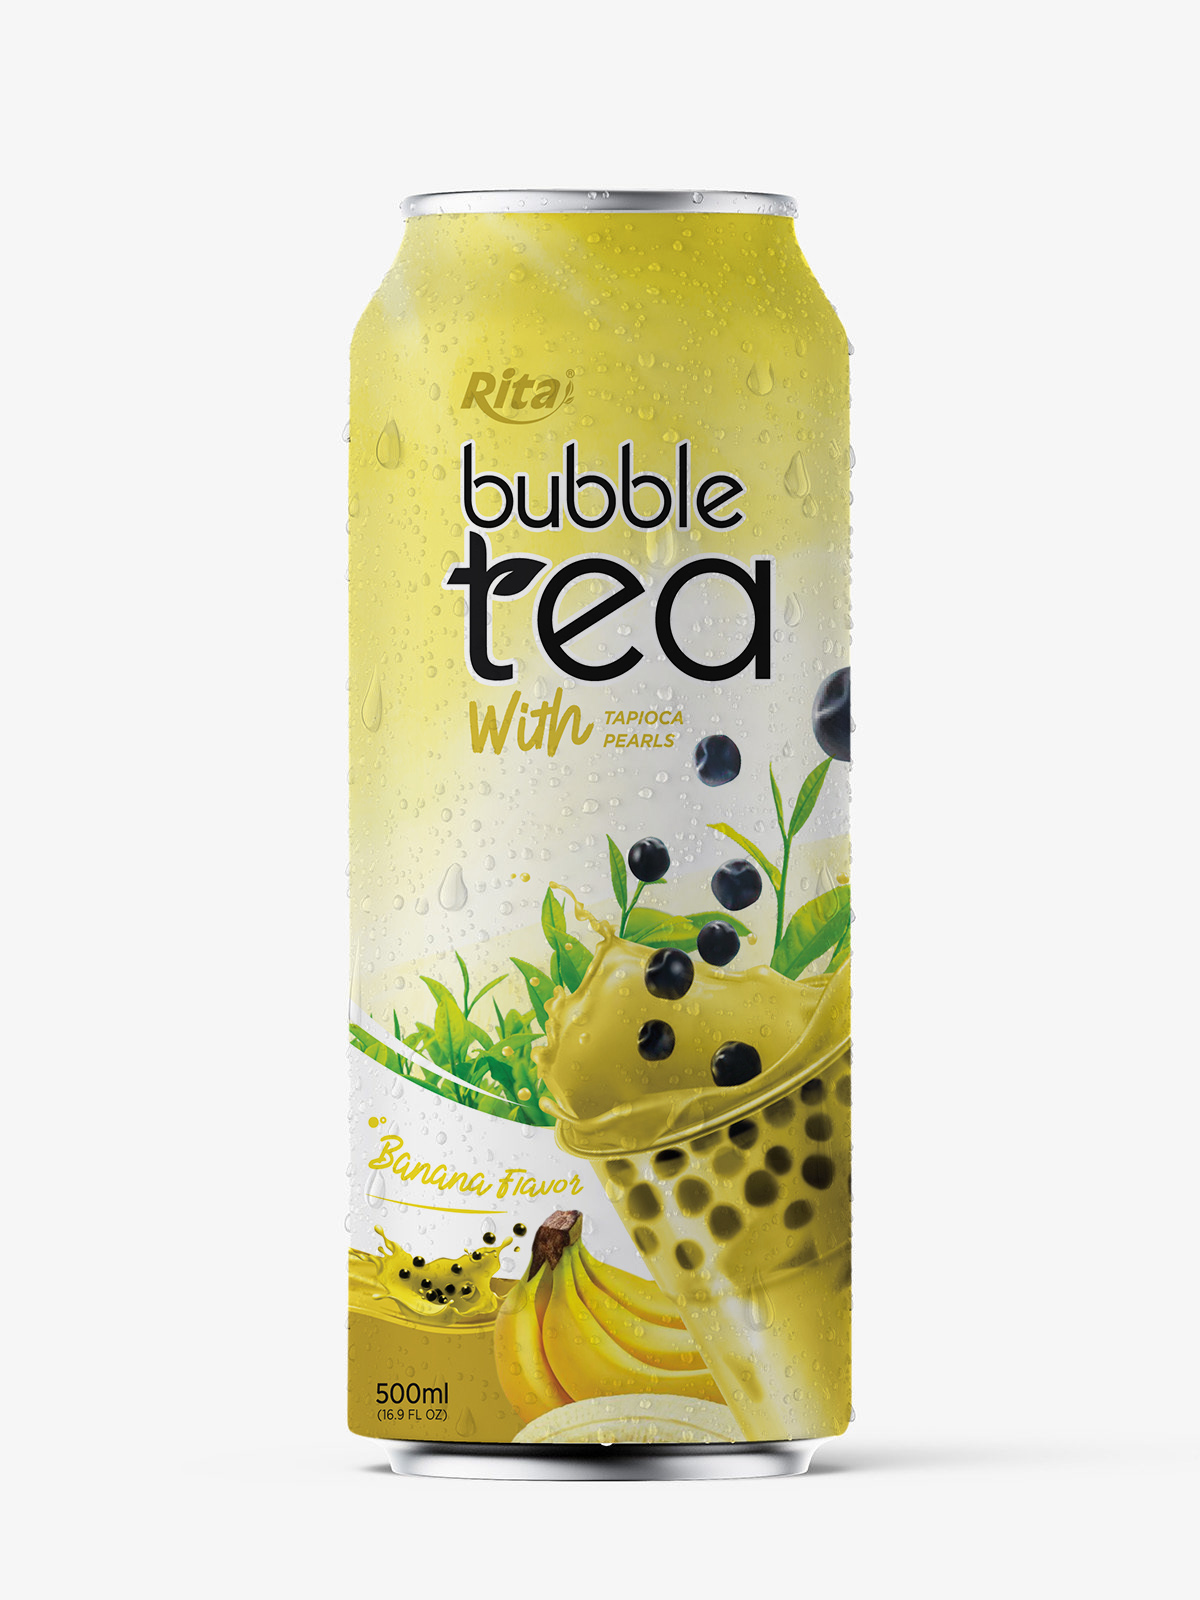 RITA Bubble Tea Banana flavor 500ml